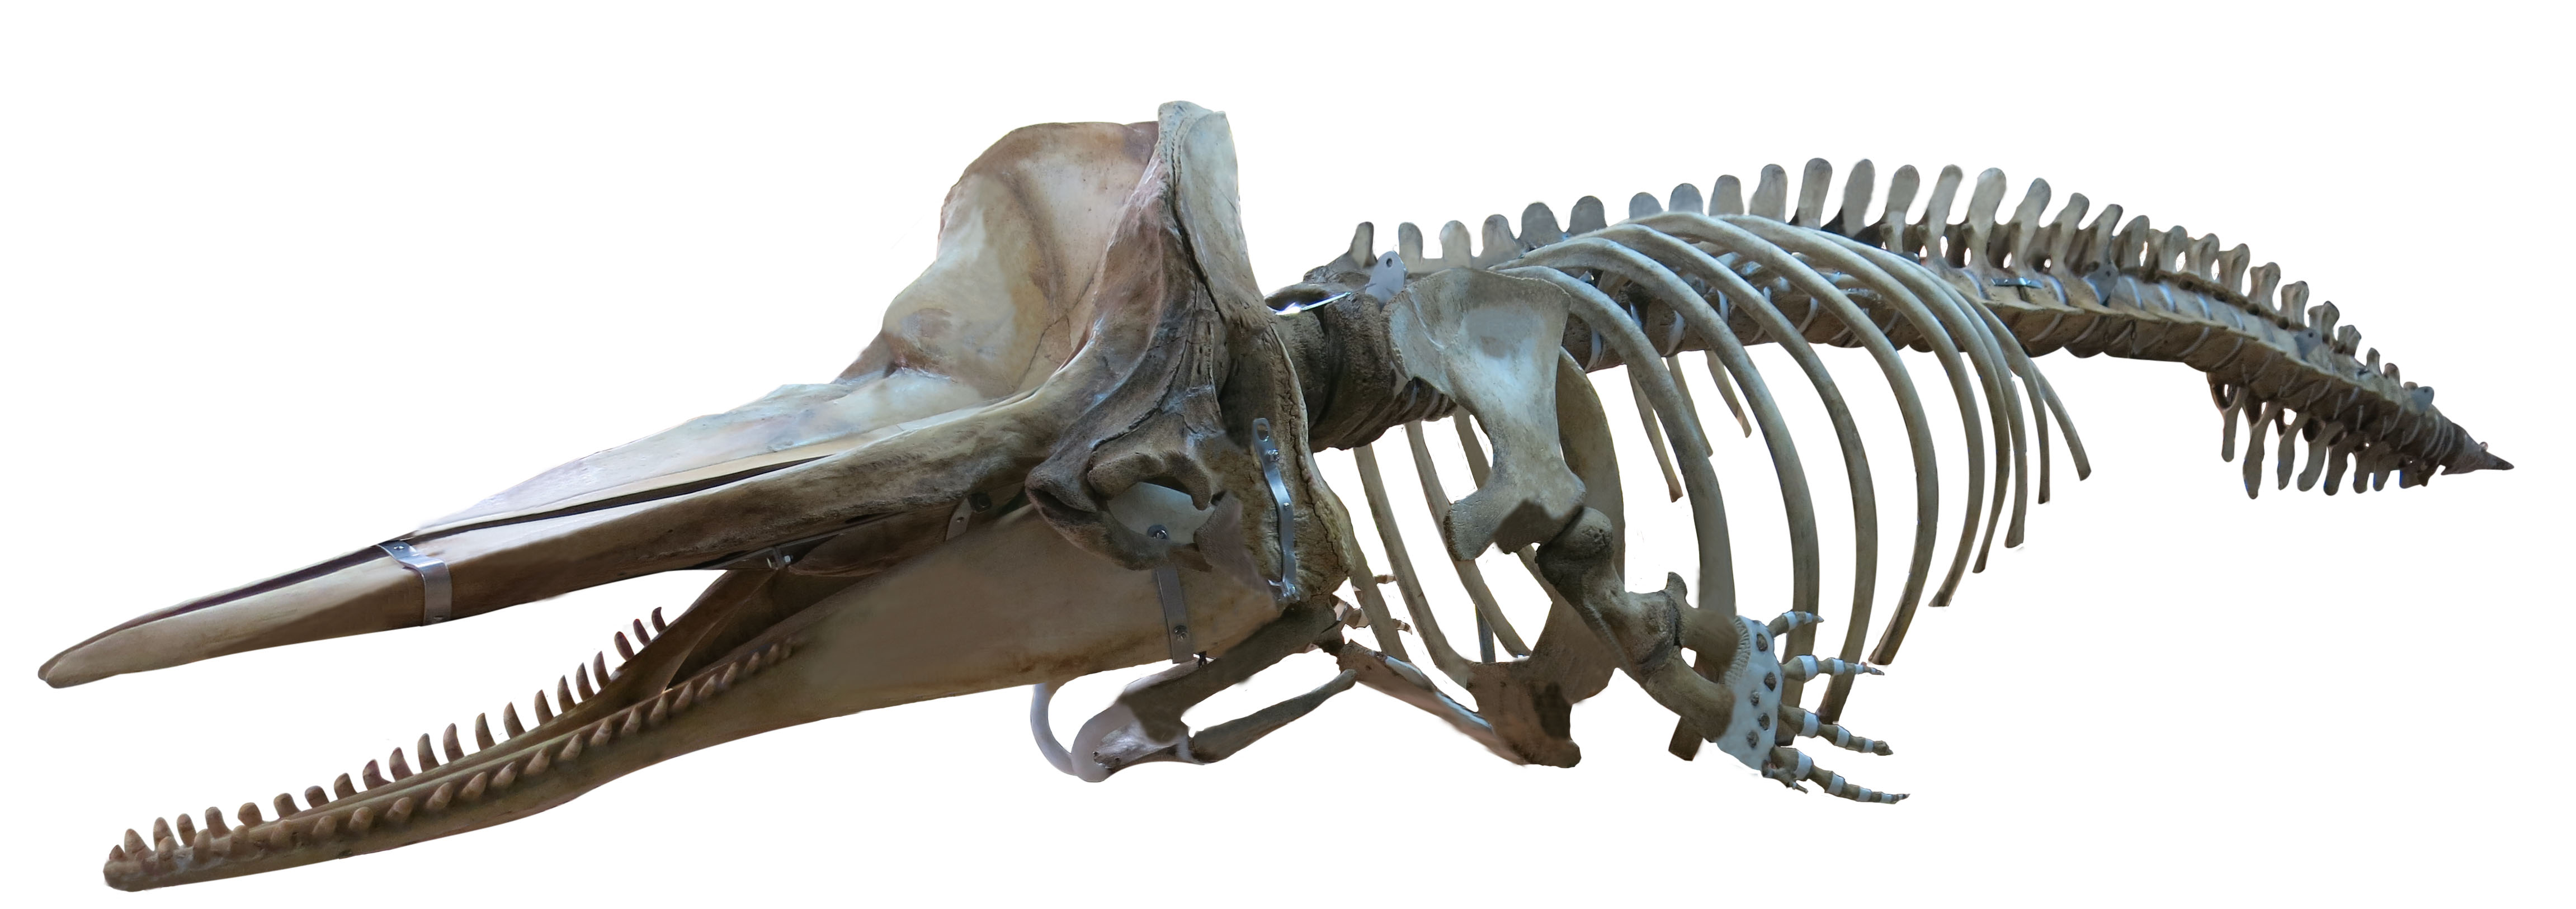 マッコウクジラ全身骨格標本「マッコ」が大阪市立自然史博物館本館玄関 ...劣化ですか